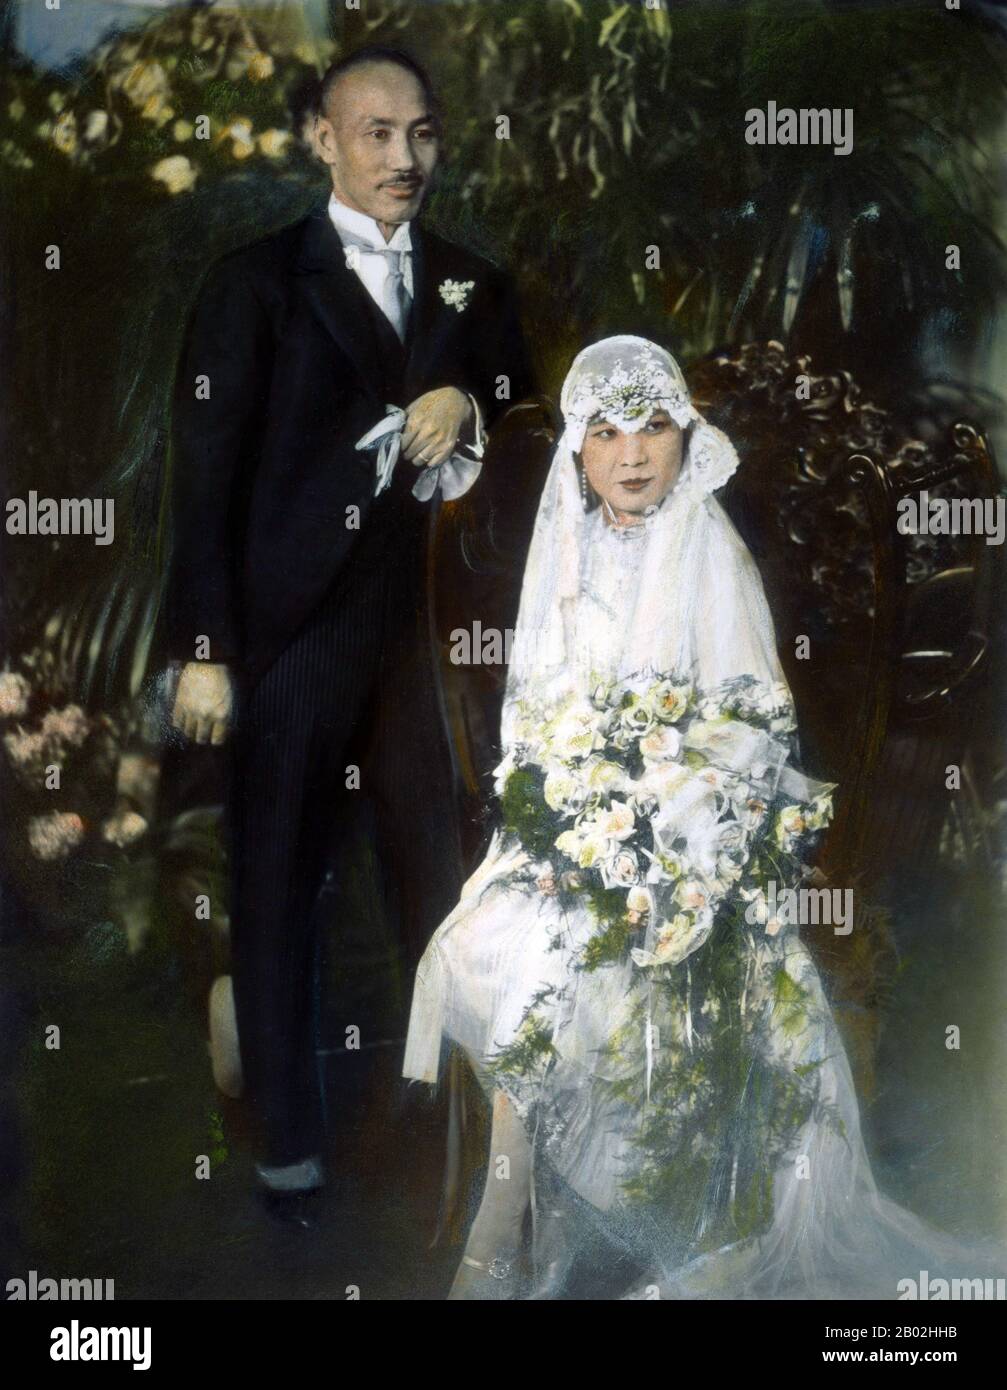 Mariage De Chiang Kai Shek Et Soong May Ling, Shanghai, 1er Décembre 1927. Soong May-ling ou Mei-ling, également connue sous le nom de Madame Chiang Kai-shek (Song Meiling, 1898-2003), première Dame de la République de Chine (ROC) et épouse du Président Chiang Kai-shek. Elle était politicienne et peintre. La plus jeune et la dernière survivante des trois soeurs Soong, elle a joué un rôle de premier plan dans la politique de la République de Chine et a été la sœur en droit de Song Qingling, épouse du Président Sun Yat-sen, fondateur de la République chinoise (1912). Banque D'Images